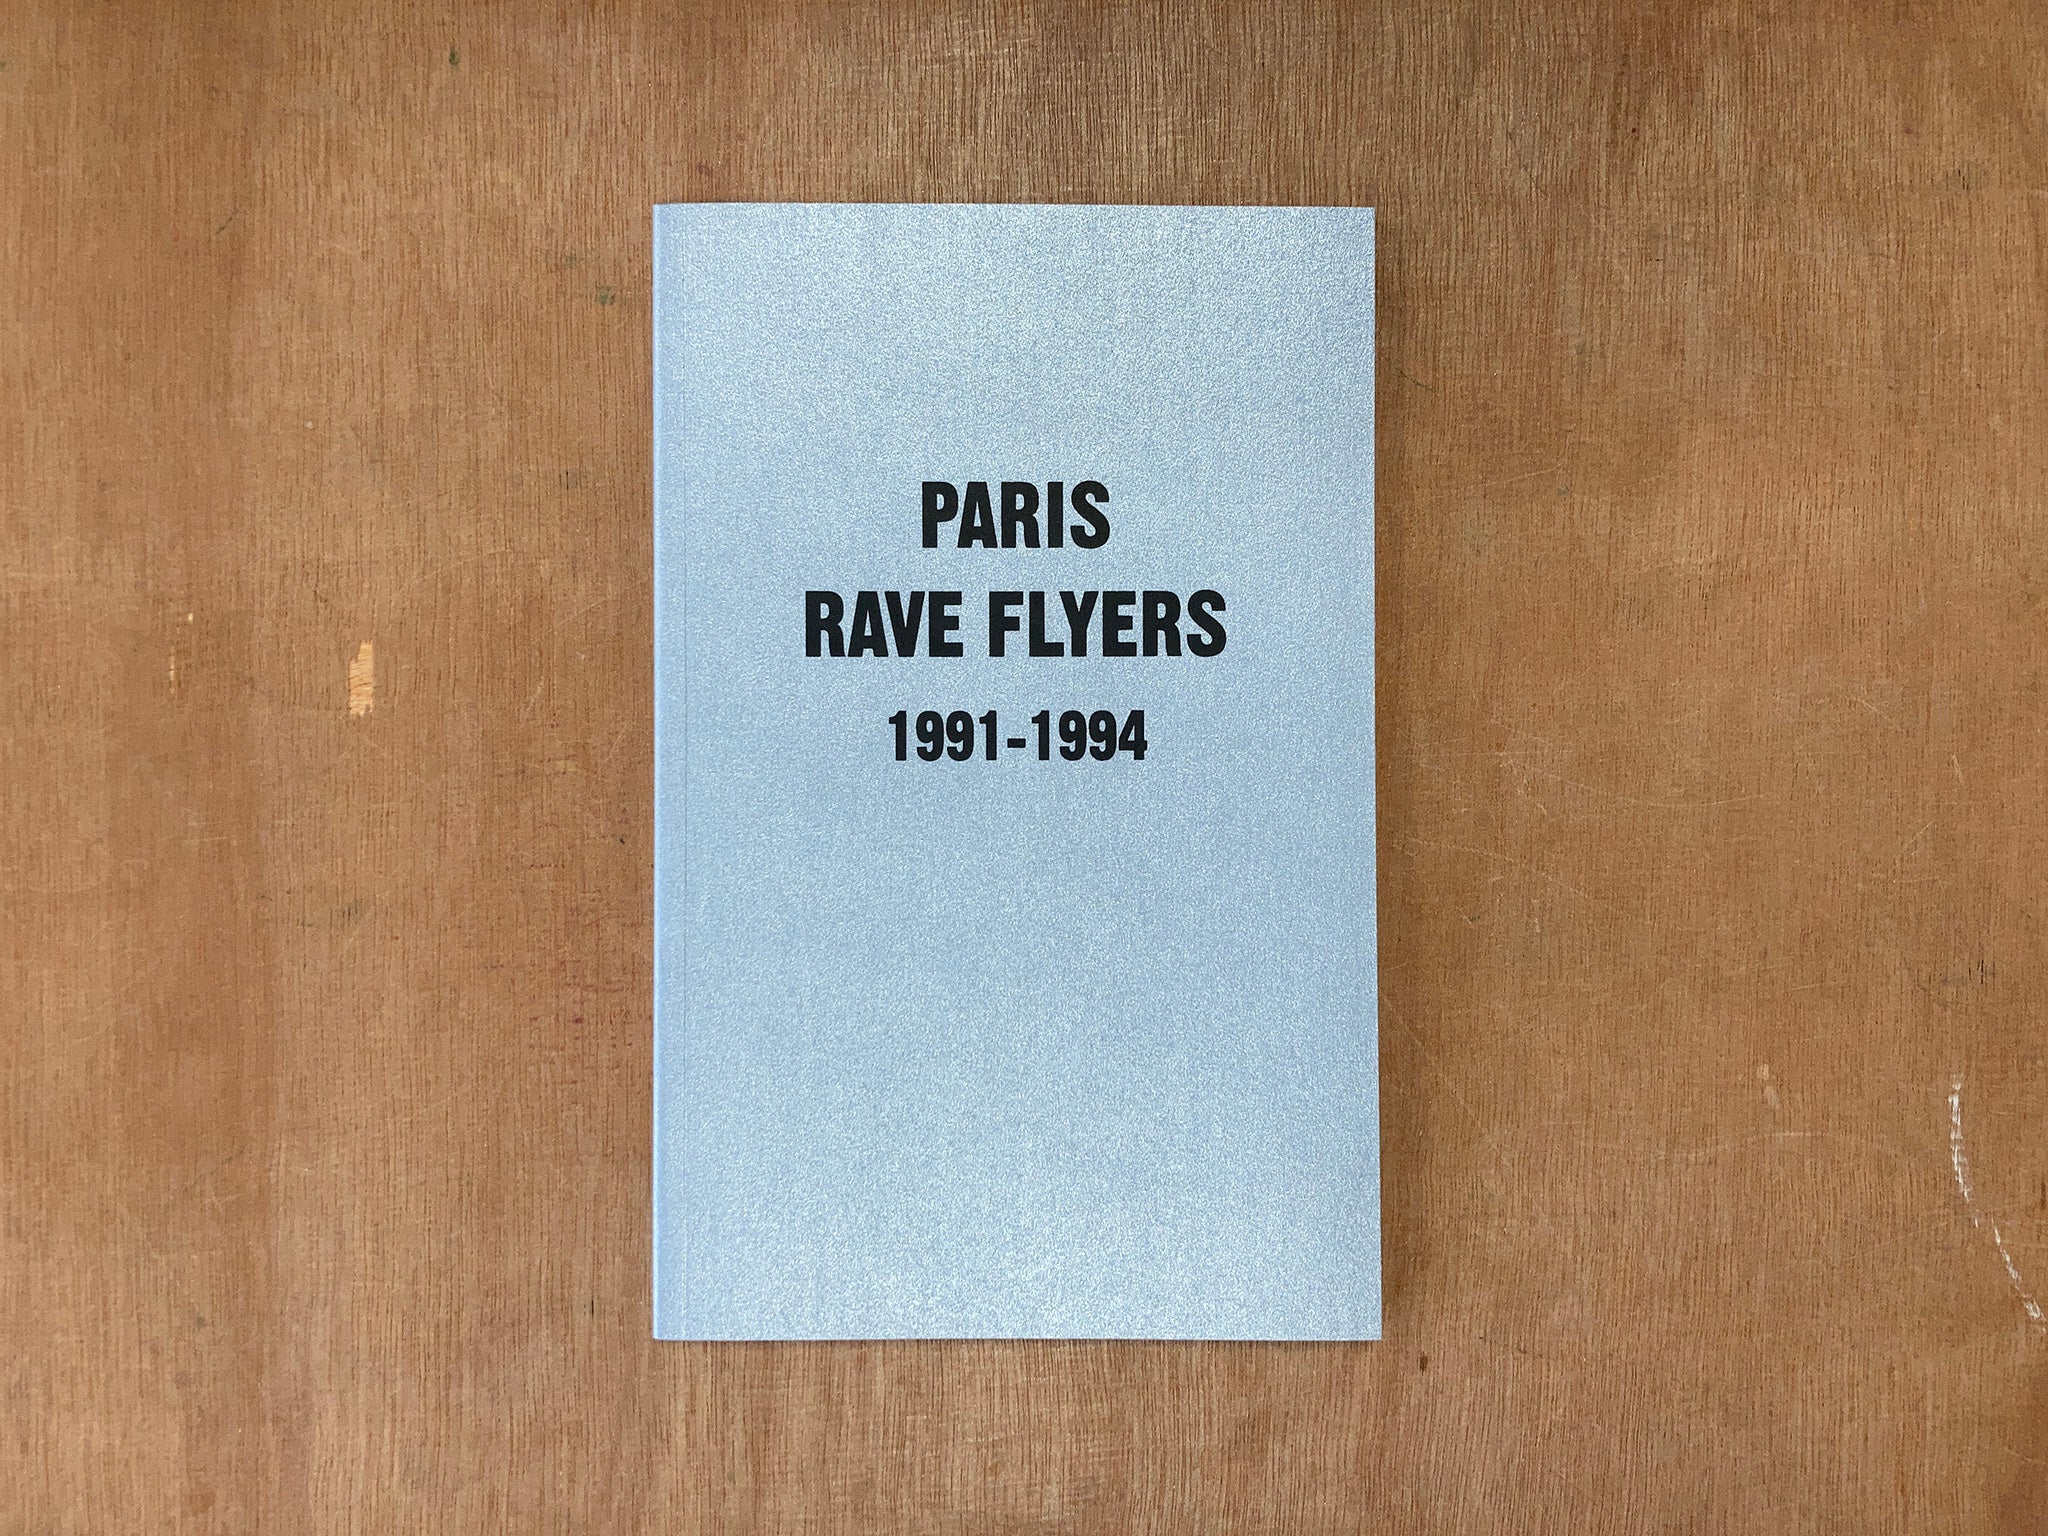 PARIS RAVE FLYERS 1991-1994